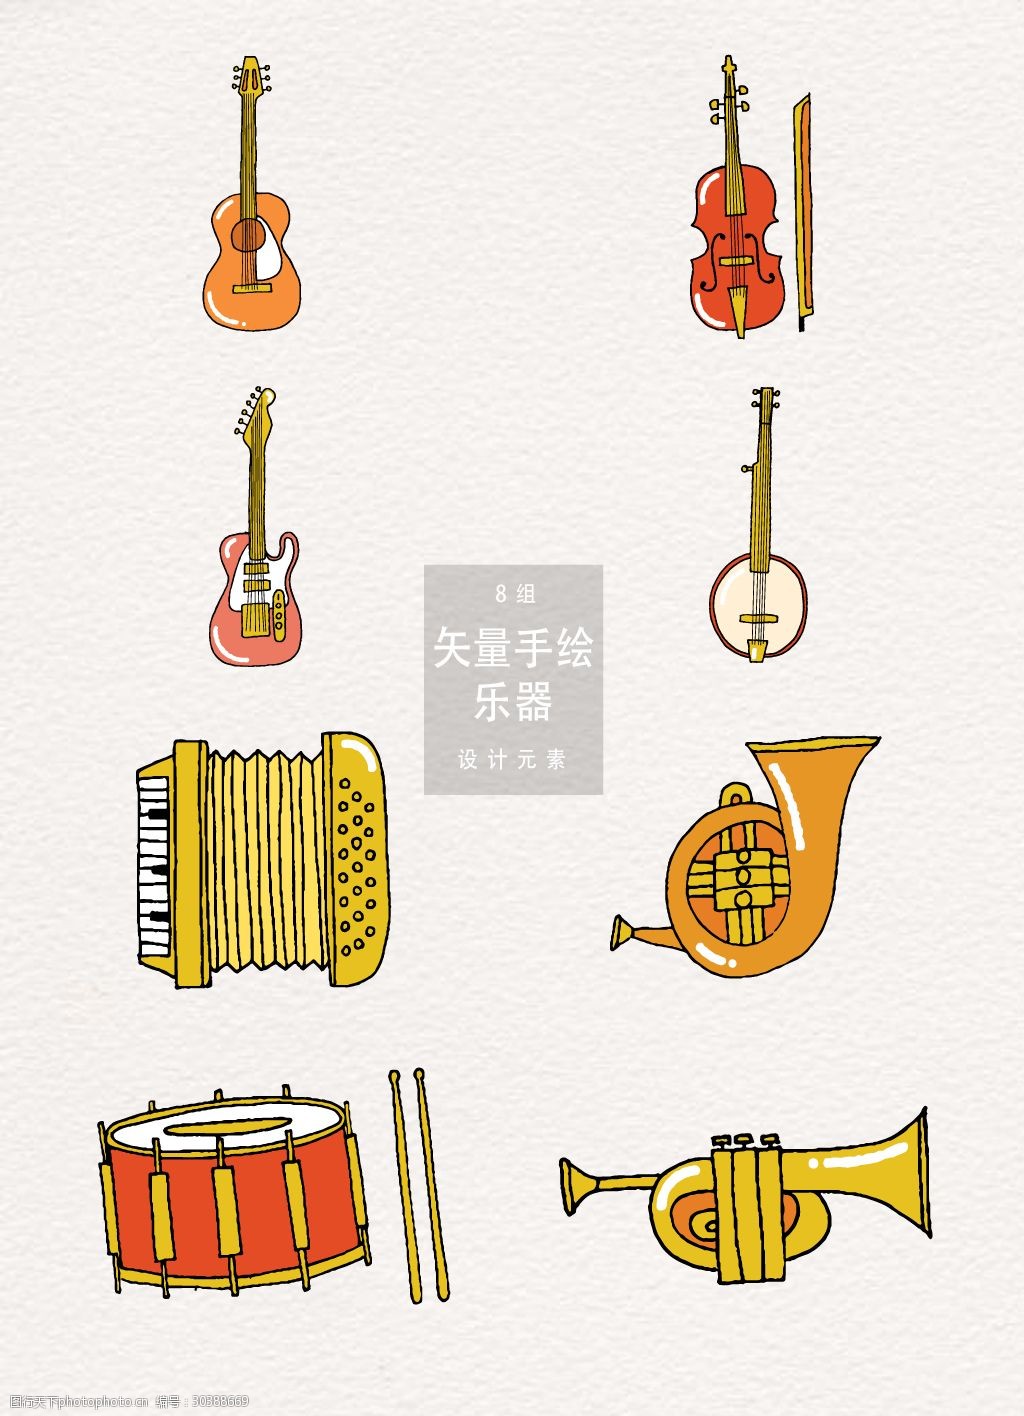 关键词:手绘乐器素材 设计 元素 音乐 矢量素材 喇叭 乐器 手绘乐器